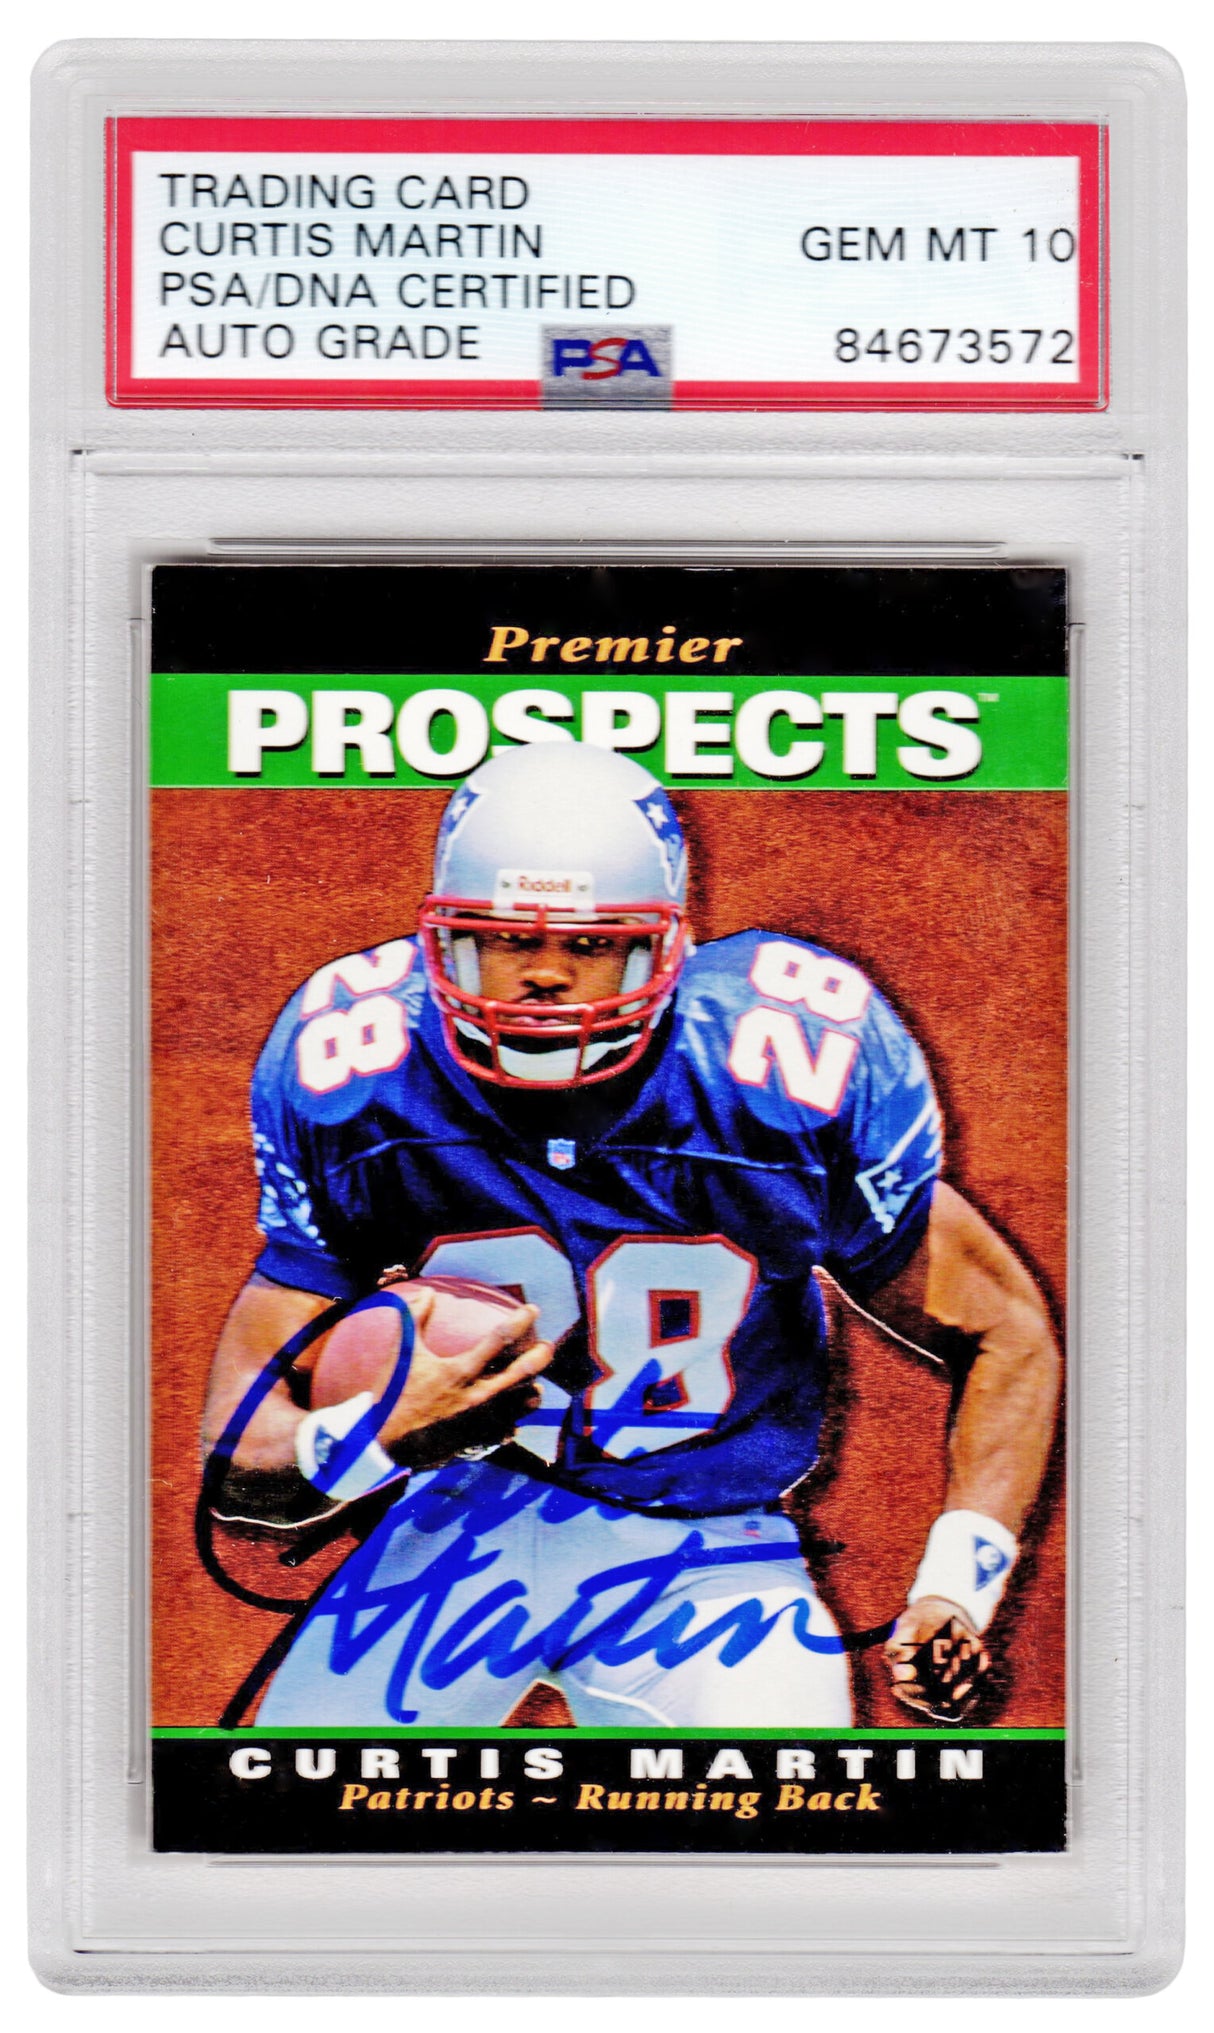 Curtis Martin Signed New England Patriots 1995 SP Foil Rookie Football Card #18 - (PSA Encapsulated / Auto Grade 10)